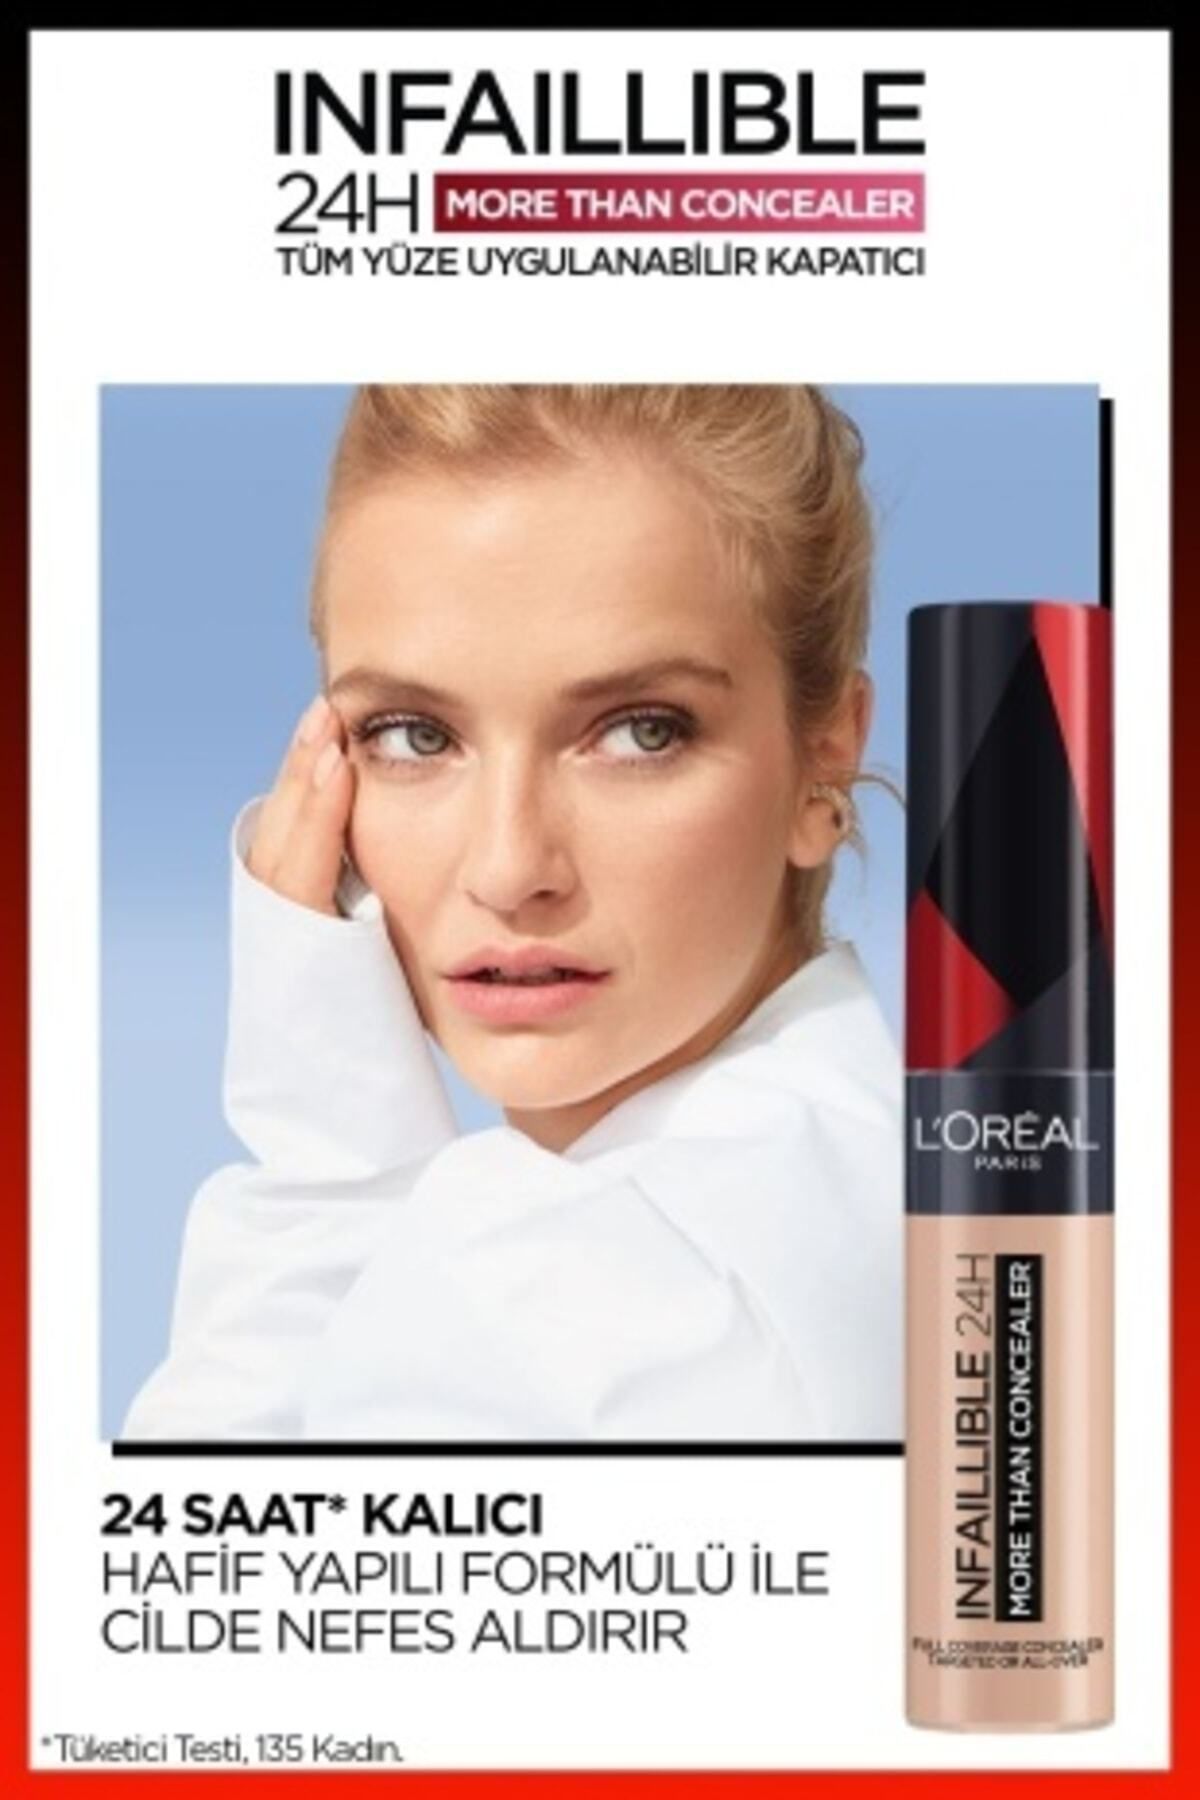 L'Oréal Paris Infaillible 24H Tüm Yüze Uygulanabilir Kapatıcı - 326 Vanilla